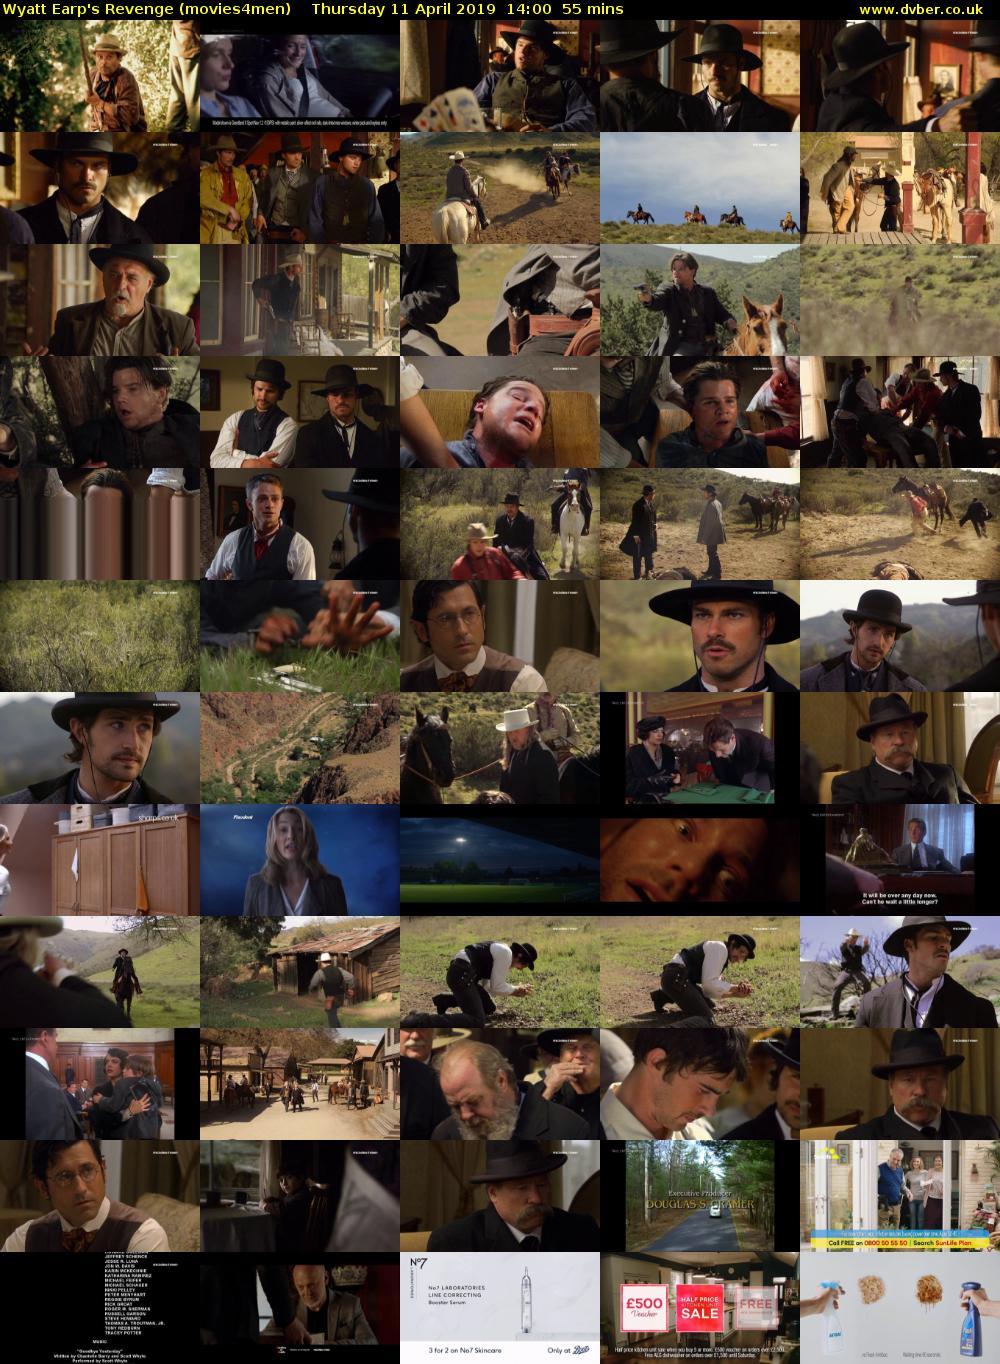 Wyatt Earp's Revenge (movies4men) Thursday 11 April 2019 14:00 - 14:55